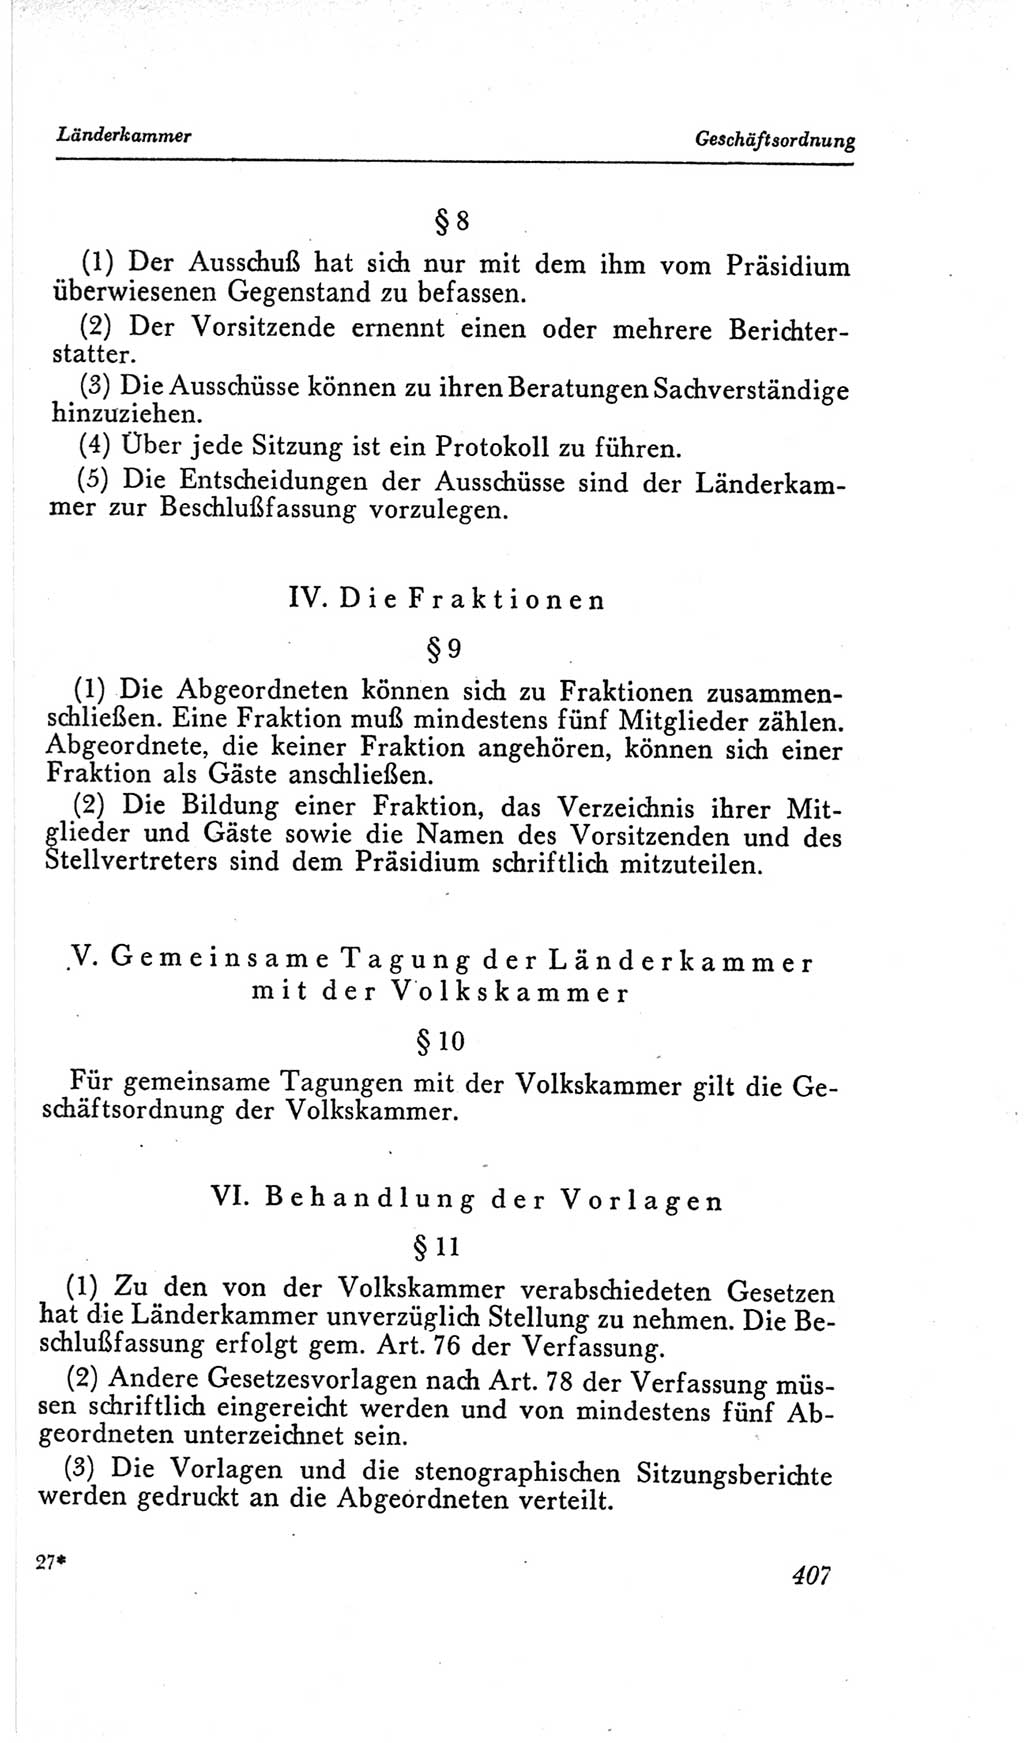 Handbuch der Volkskammer (VK) der Deutschen Demokratischen Republik (DDR), 2. Wahlperiode 1954-1958, Seite 407 (Hdb. VK. DDR, 2. WP. 1954-1958, S. 407)